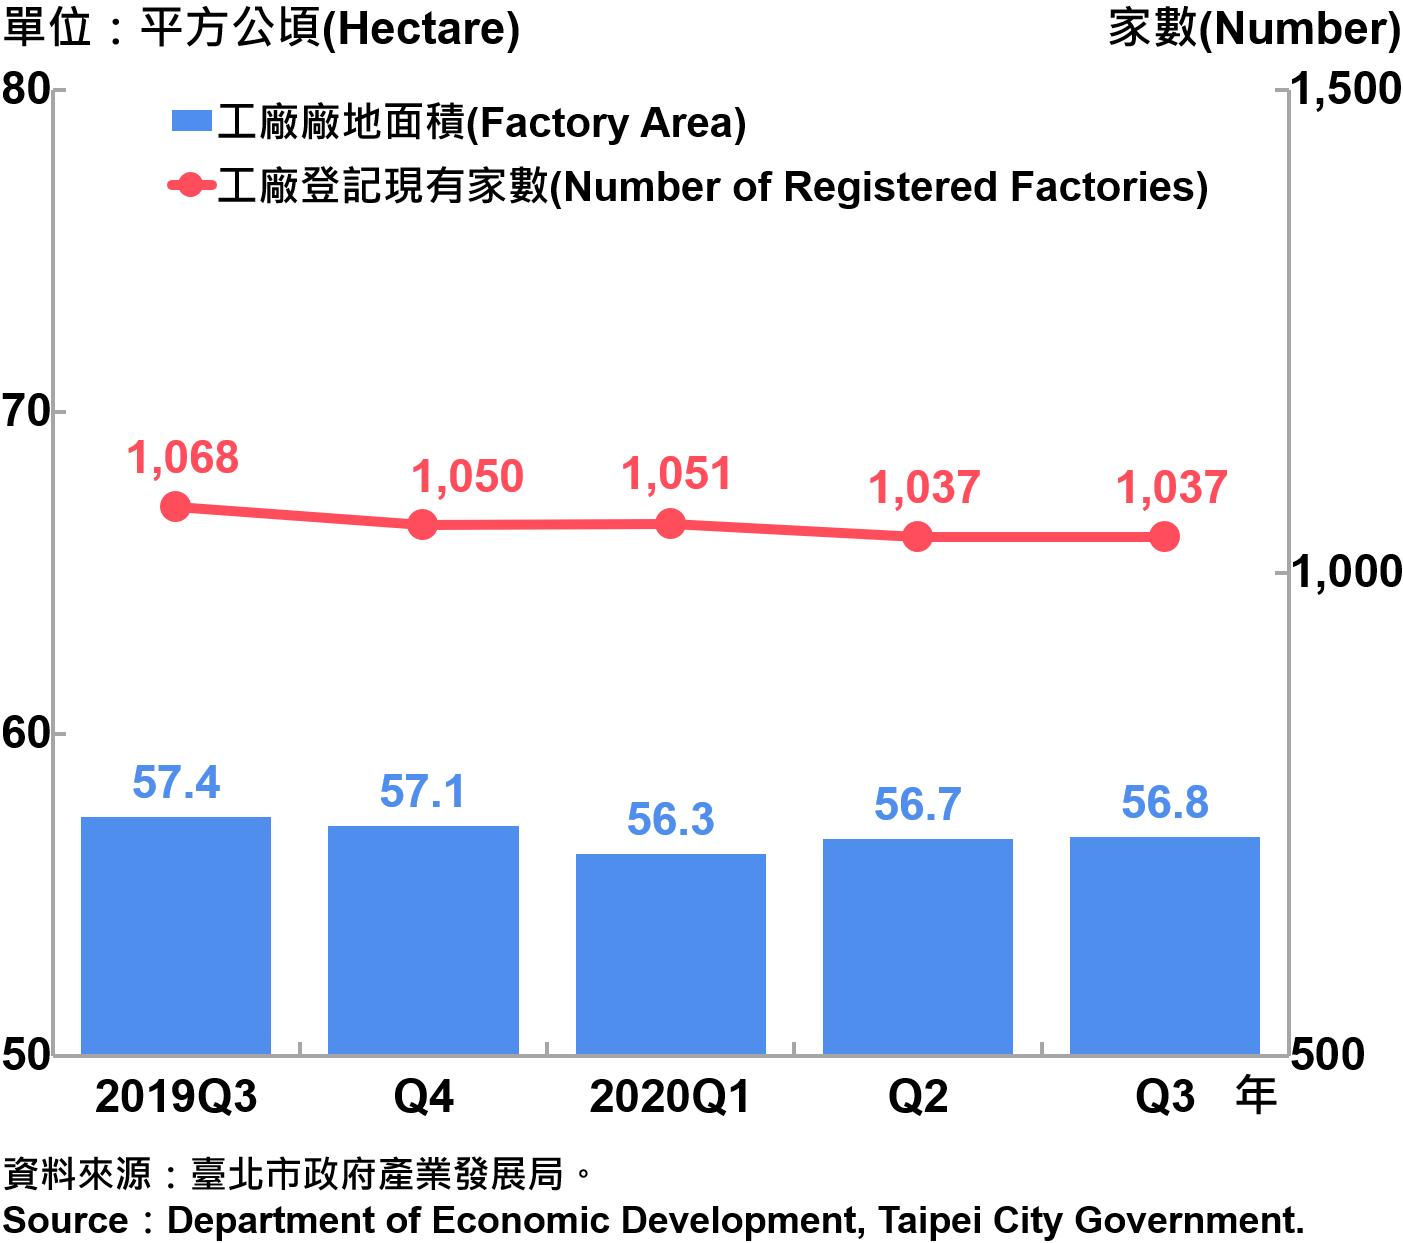 臺北市工廠登記家數及廠地面積—2020Q3 Number of Factories Registered and Factory Lands in Taipei—2020Q3